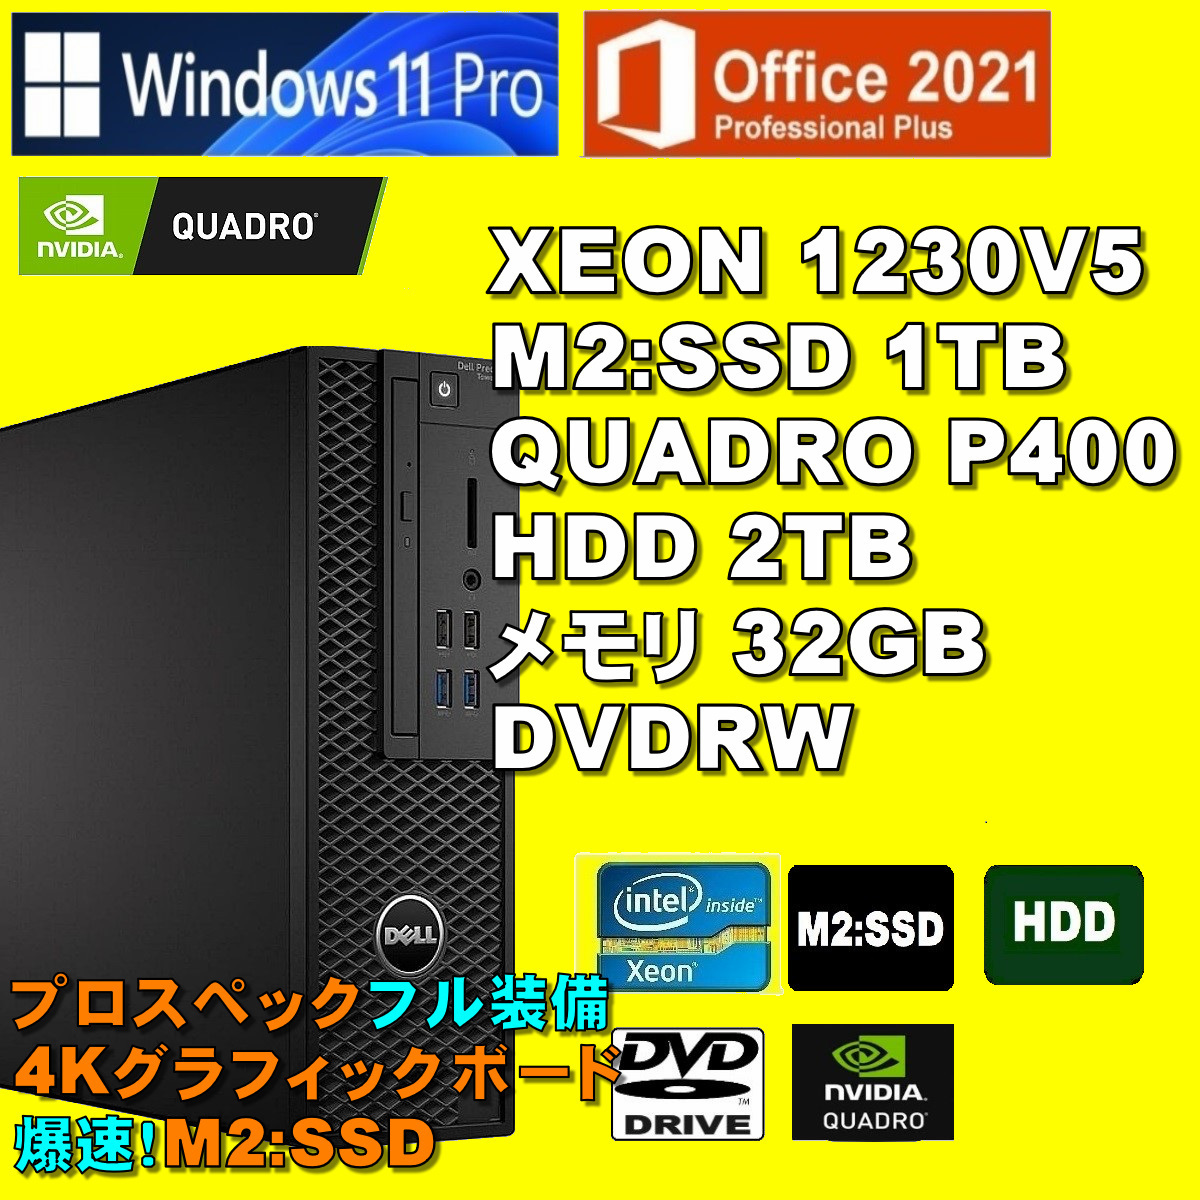 プロスペック!4Kx3画面 XEON-1230V5/ QUADRO P-400/ 新品M2:SSD-1TB/ HDD-2TB/ メモリ-32GB/ DVDRW/ Win11Pro/ Office2021Pro/ メディア15_画像1